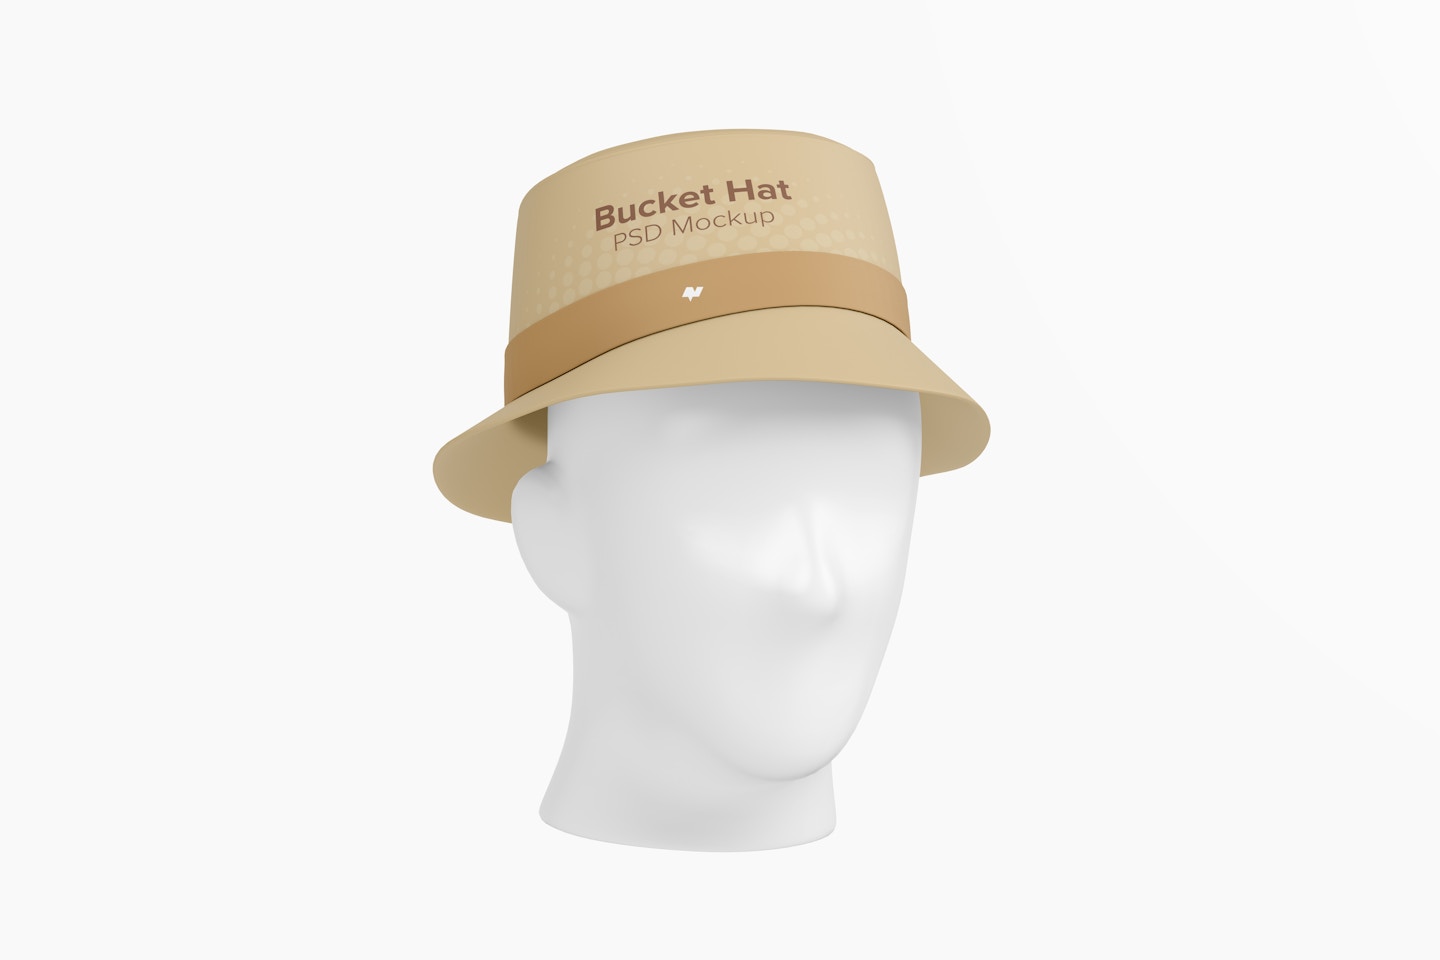 Bucket Hat Mockup, 3/4 Front Left View